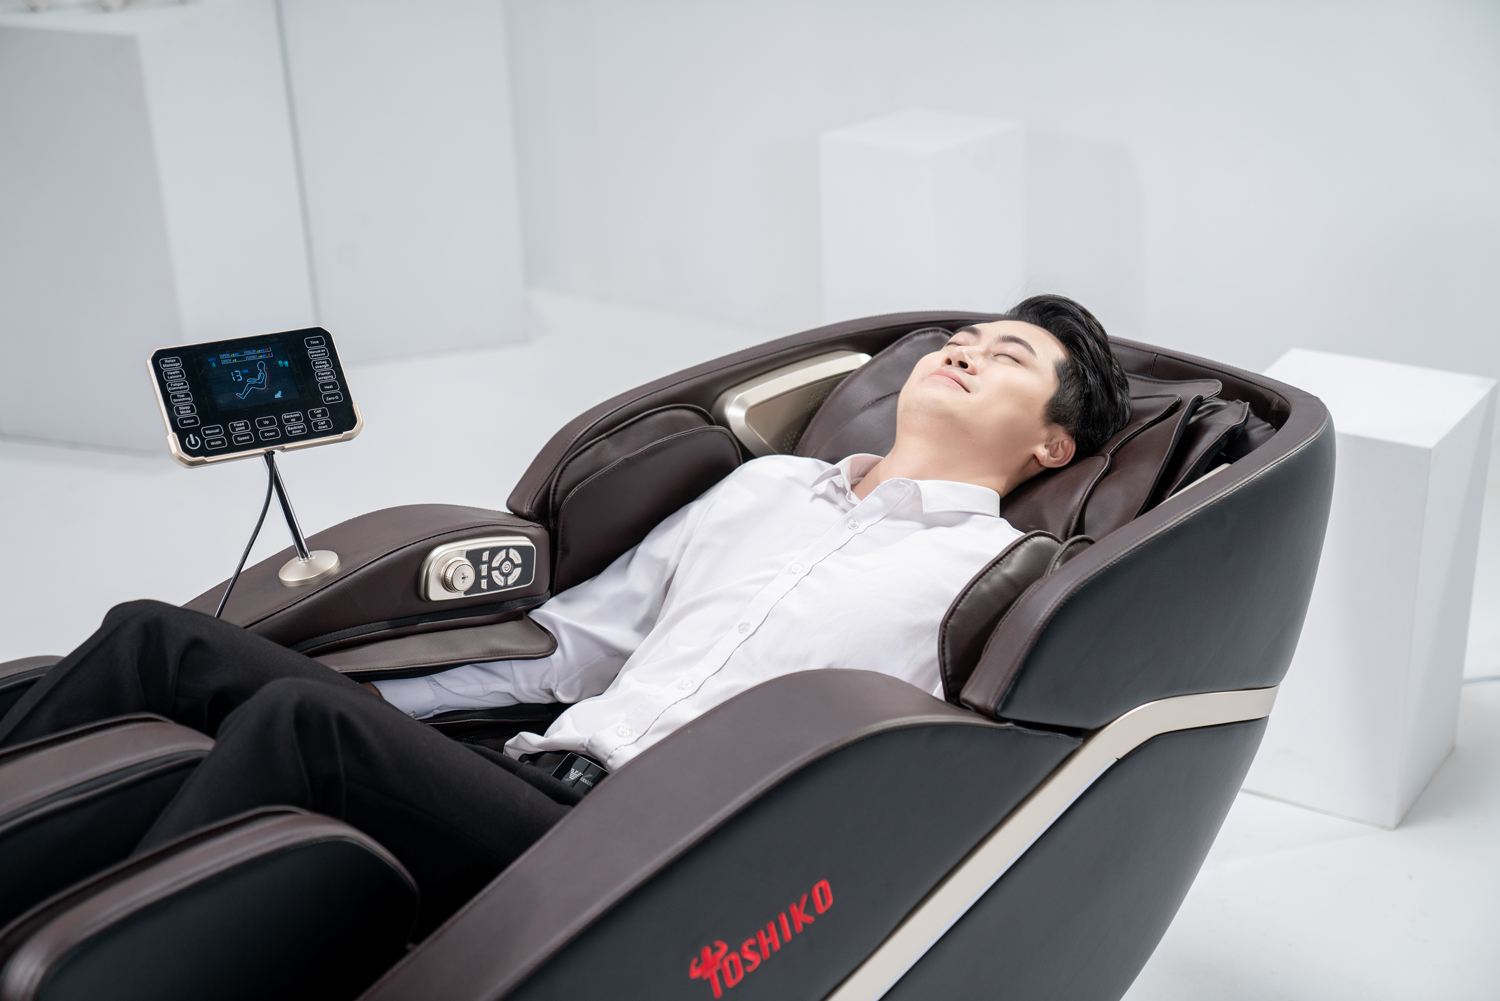 Ghế massage kéo giãn cột sống - Bí quyết thư giãn hiệu quả cho cơ thể